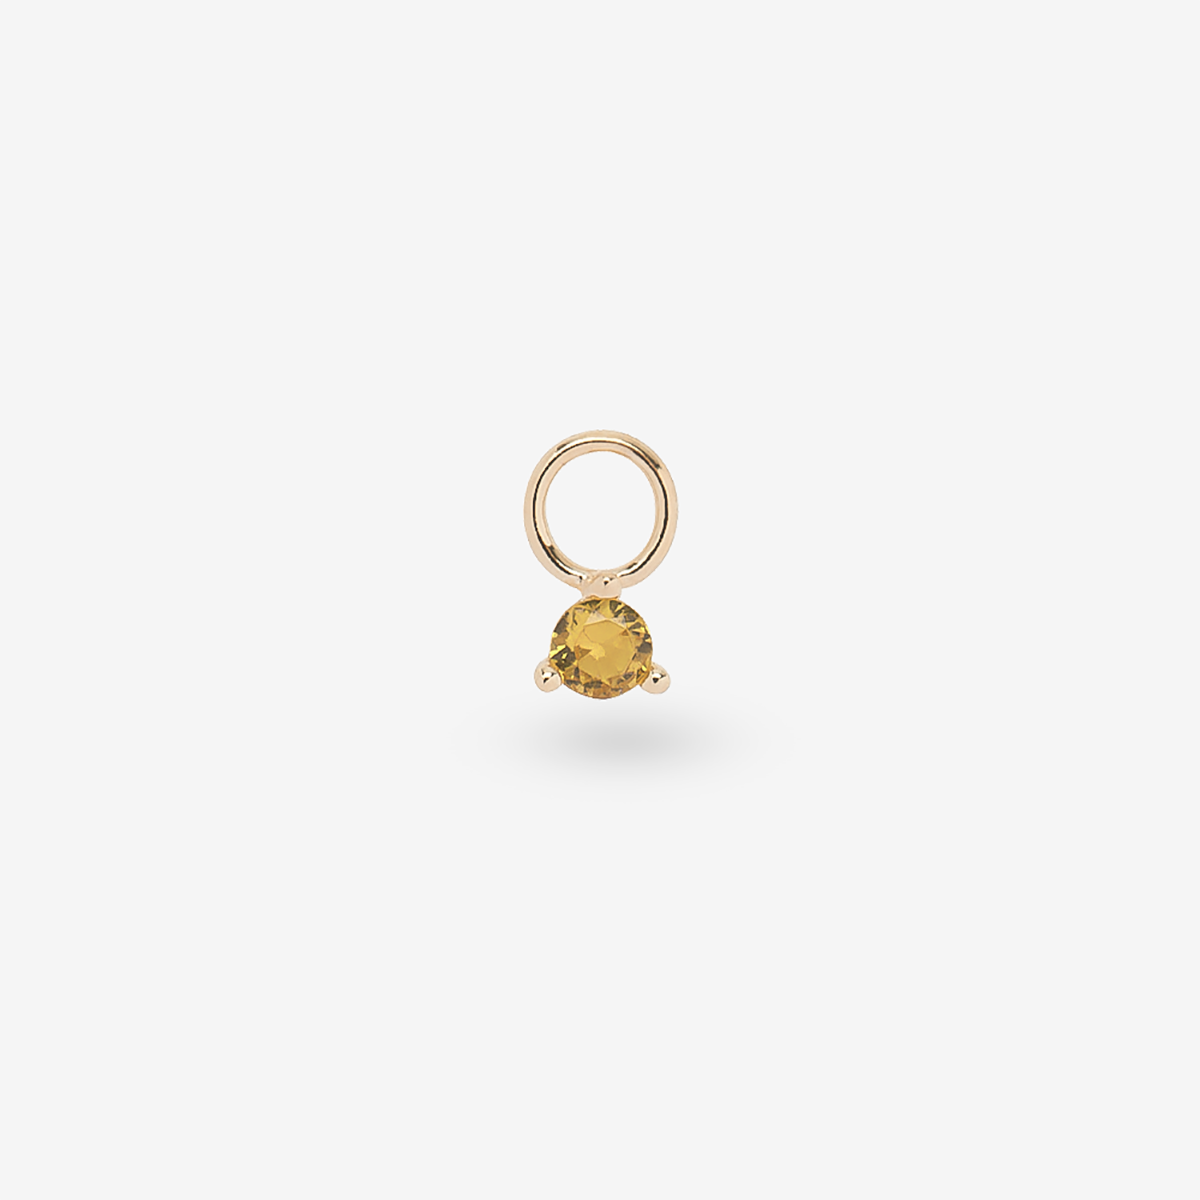 Crystal Yellow - Ohrringanhänger - 18k vergoldet